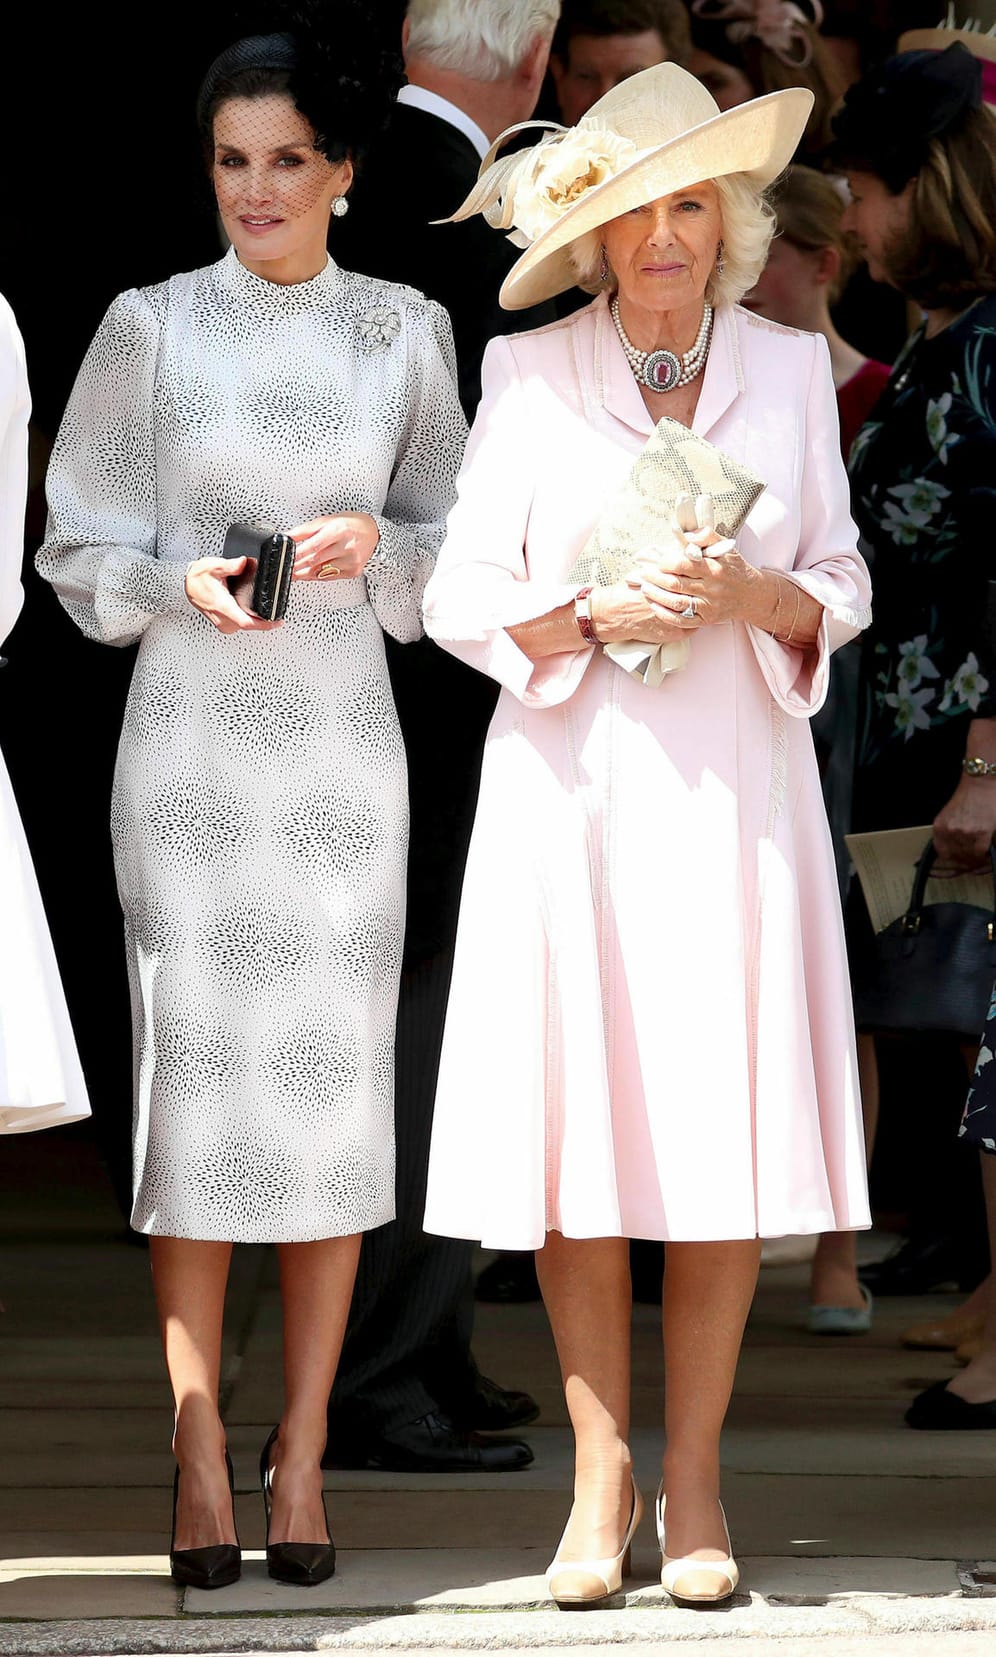 Die Königin von Spanien und die Herzogin von Cornwall: Letizia und Camilla waren auch unter den Gästen.